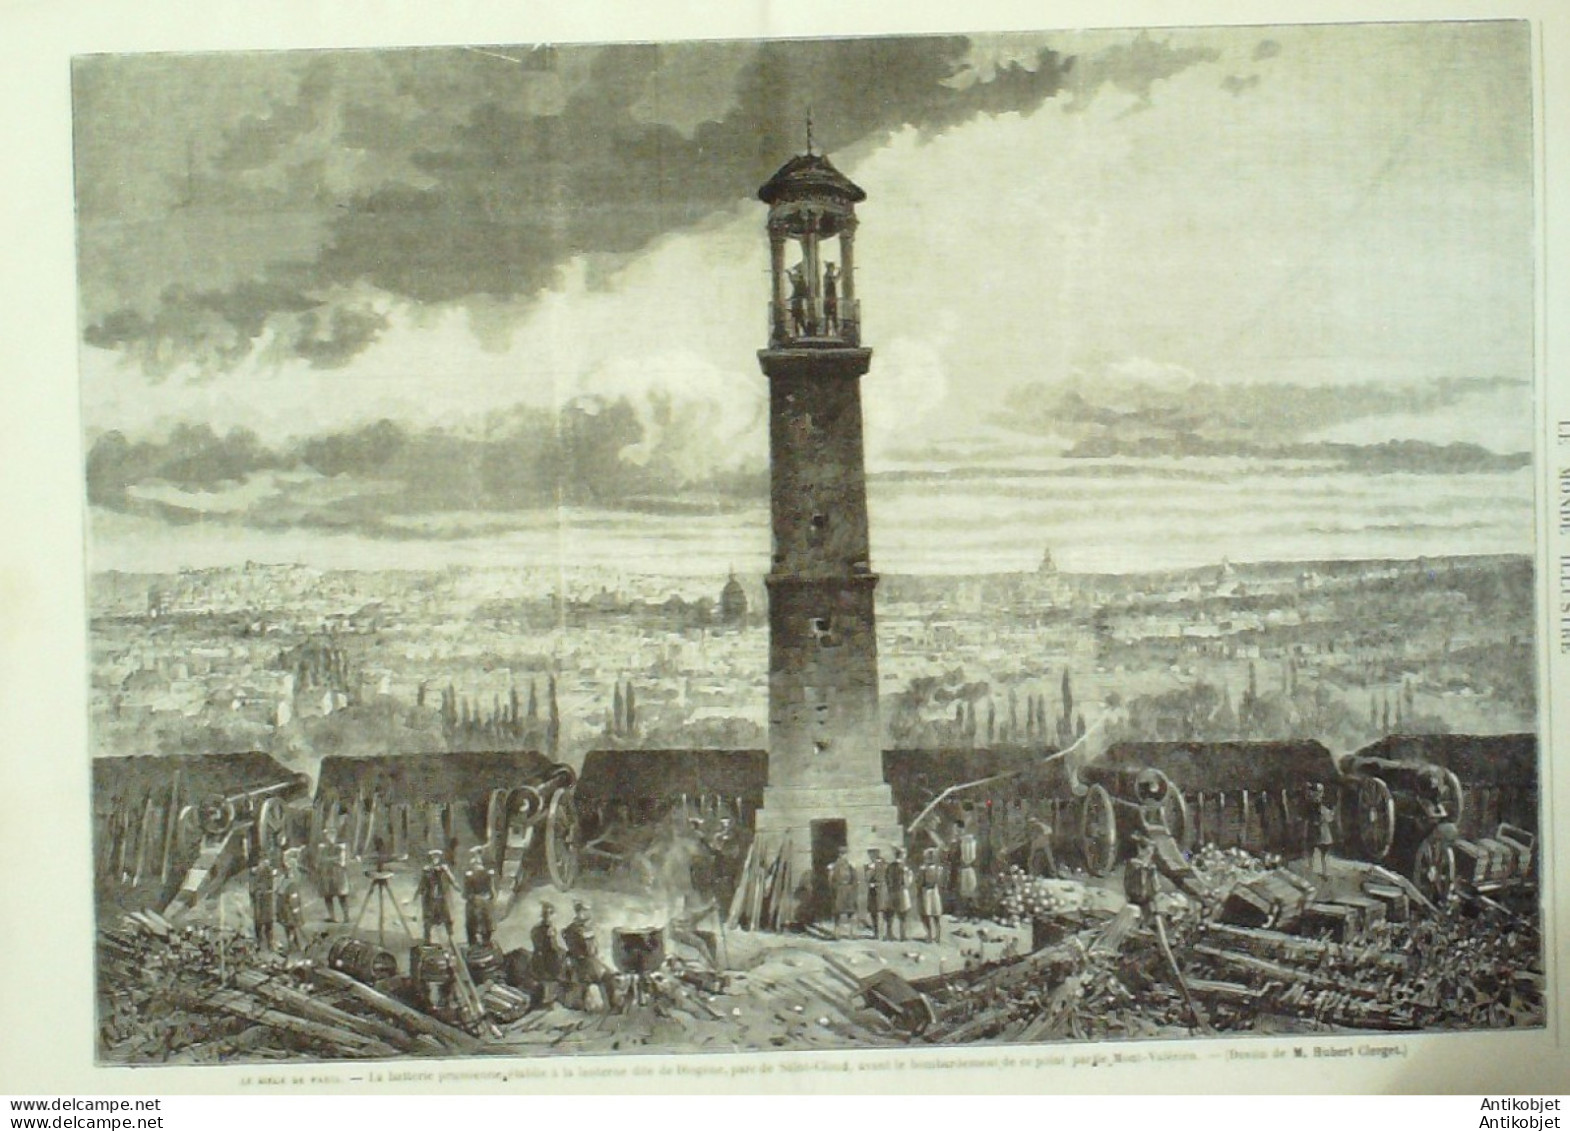 Le Monde illustré 1870 n°706 St-Could (92) Château Bagneux (92) Mont-Valérien Clamart Chatillon (92)